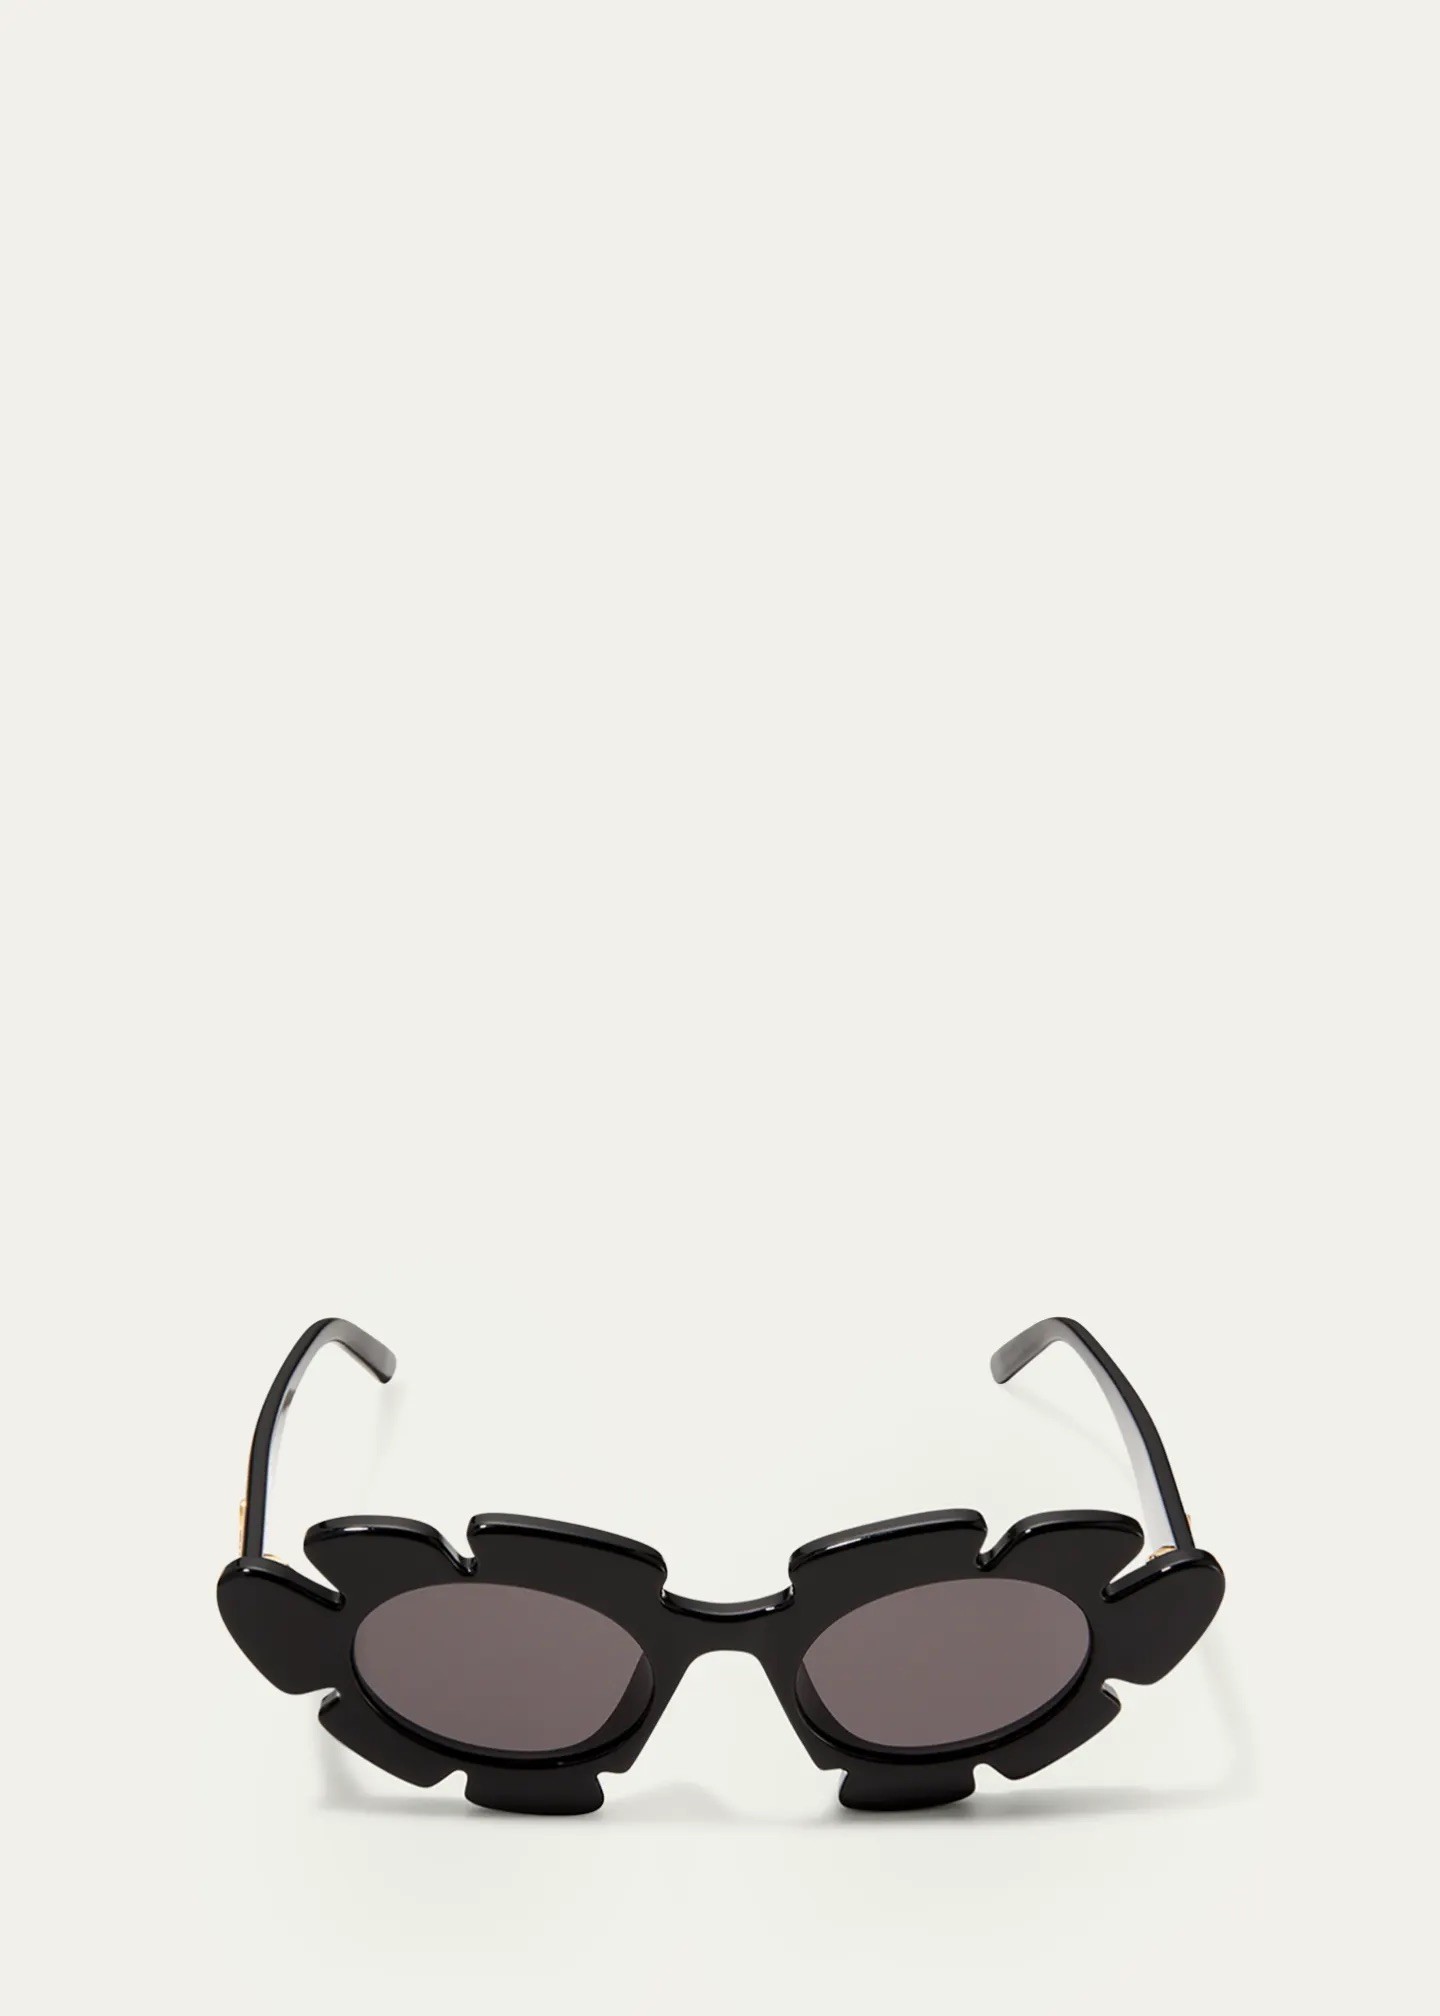 Designer Unisex Illesteva Sunglasses With Flower Lens For Travel